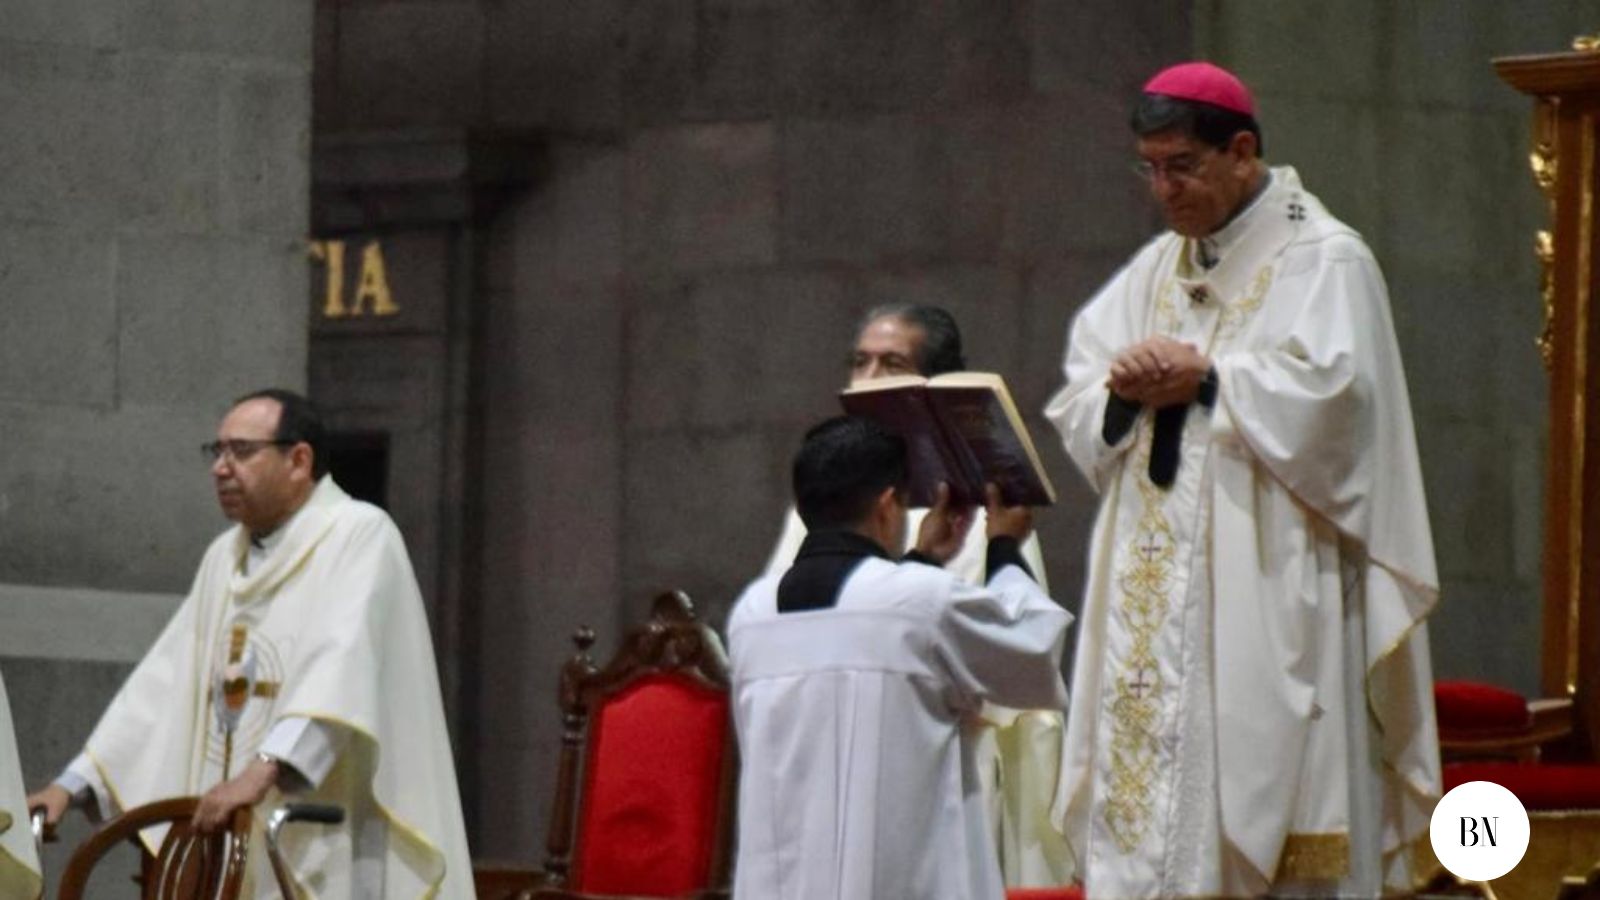 73 Aniversario de la Arquidiócesis de Toluca